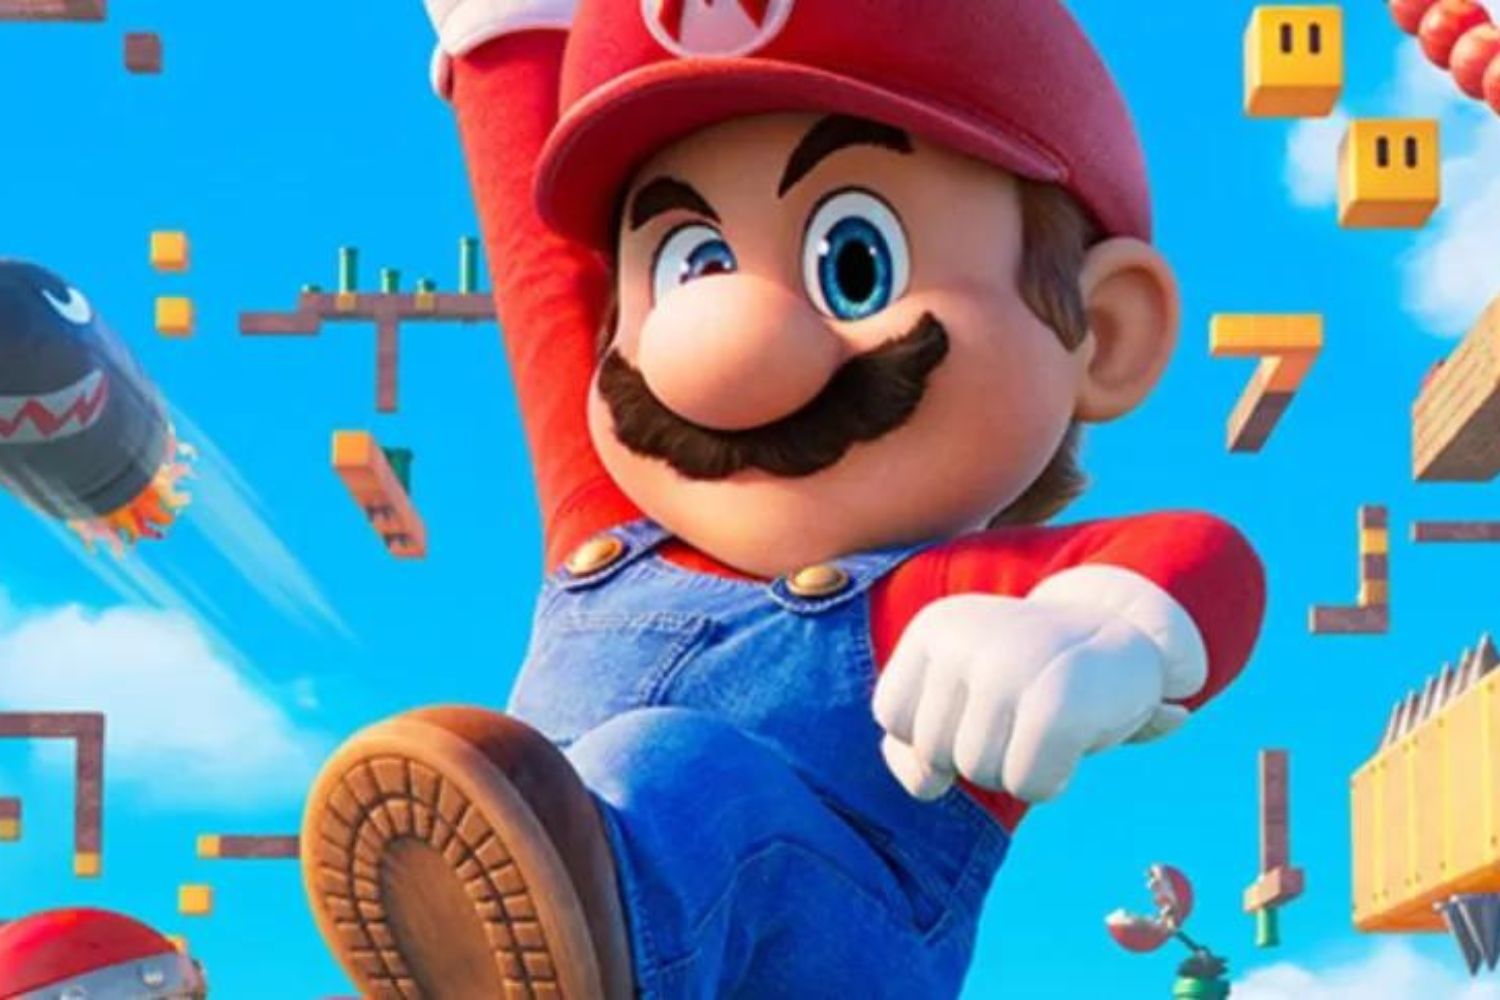 Como Mario virou “Super Mario